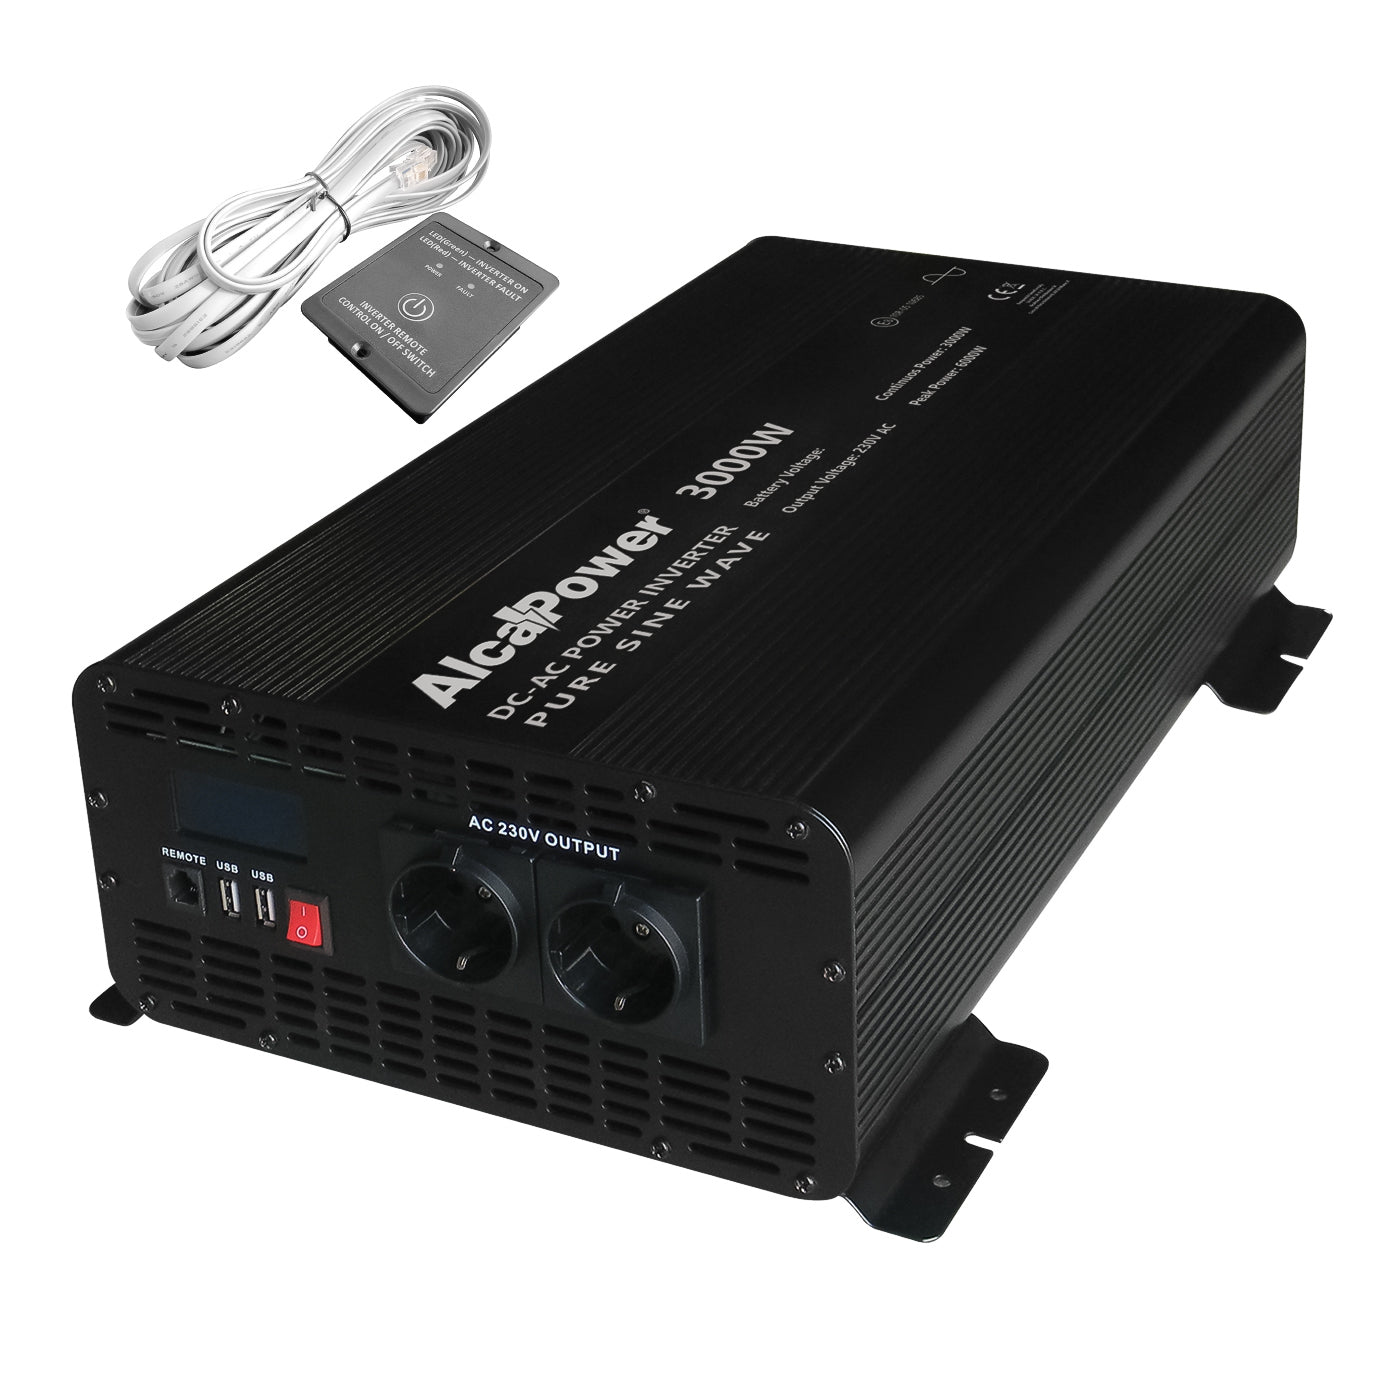 Alcapower 924231 Inverter sinusoidale onda pura 3000W, controllo remoto con cavo di 6m incluso e 2 prese USB, Input 24V Output 230V, display LCD, cavi inclusi